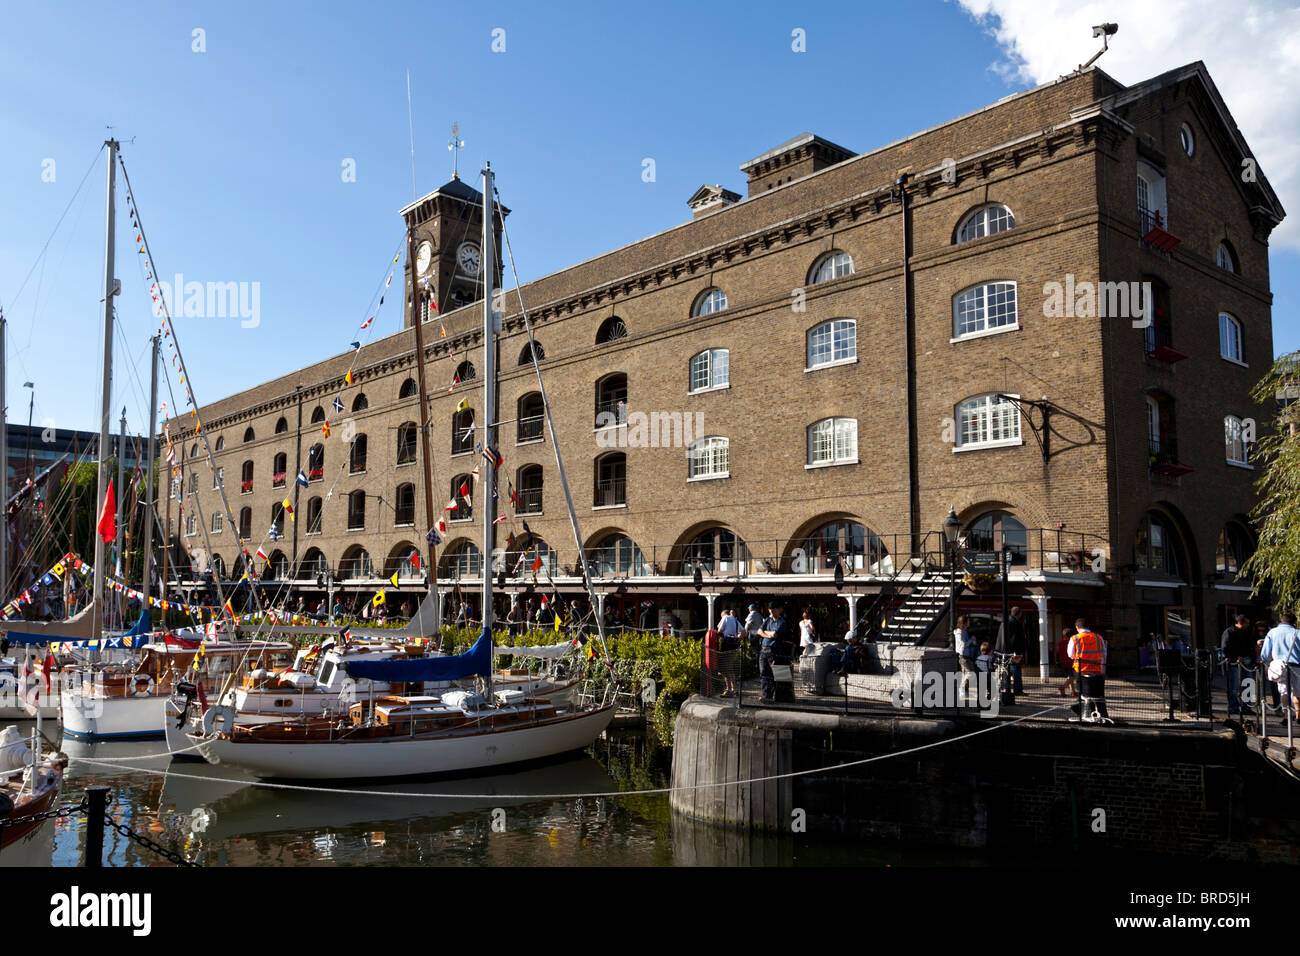 St Katharine Docks, London, UK. Stock Photo